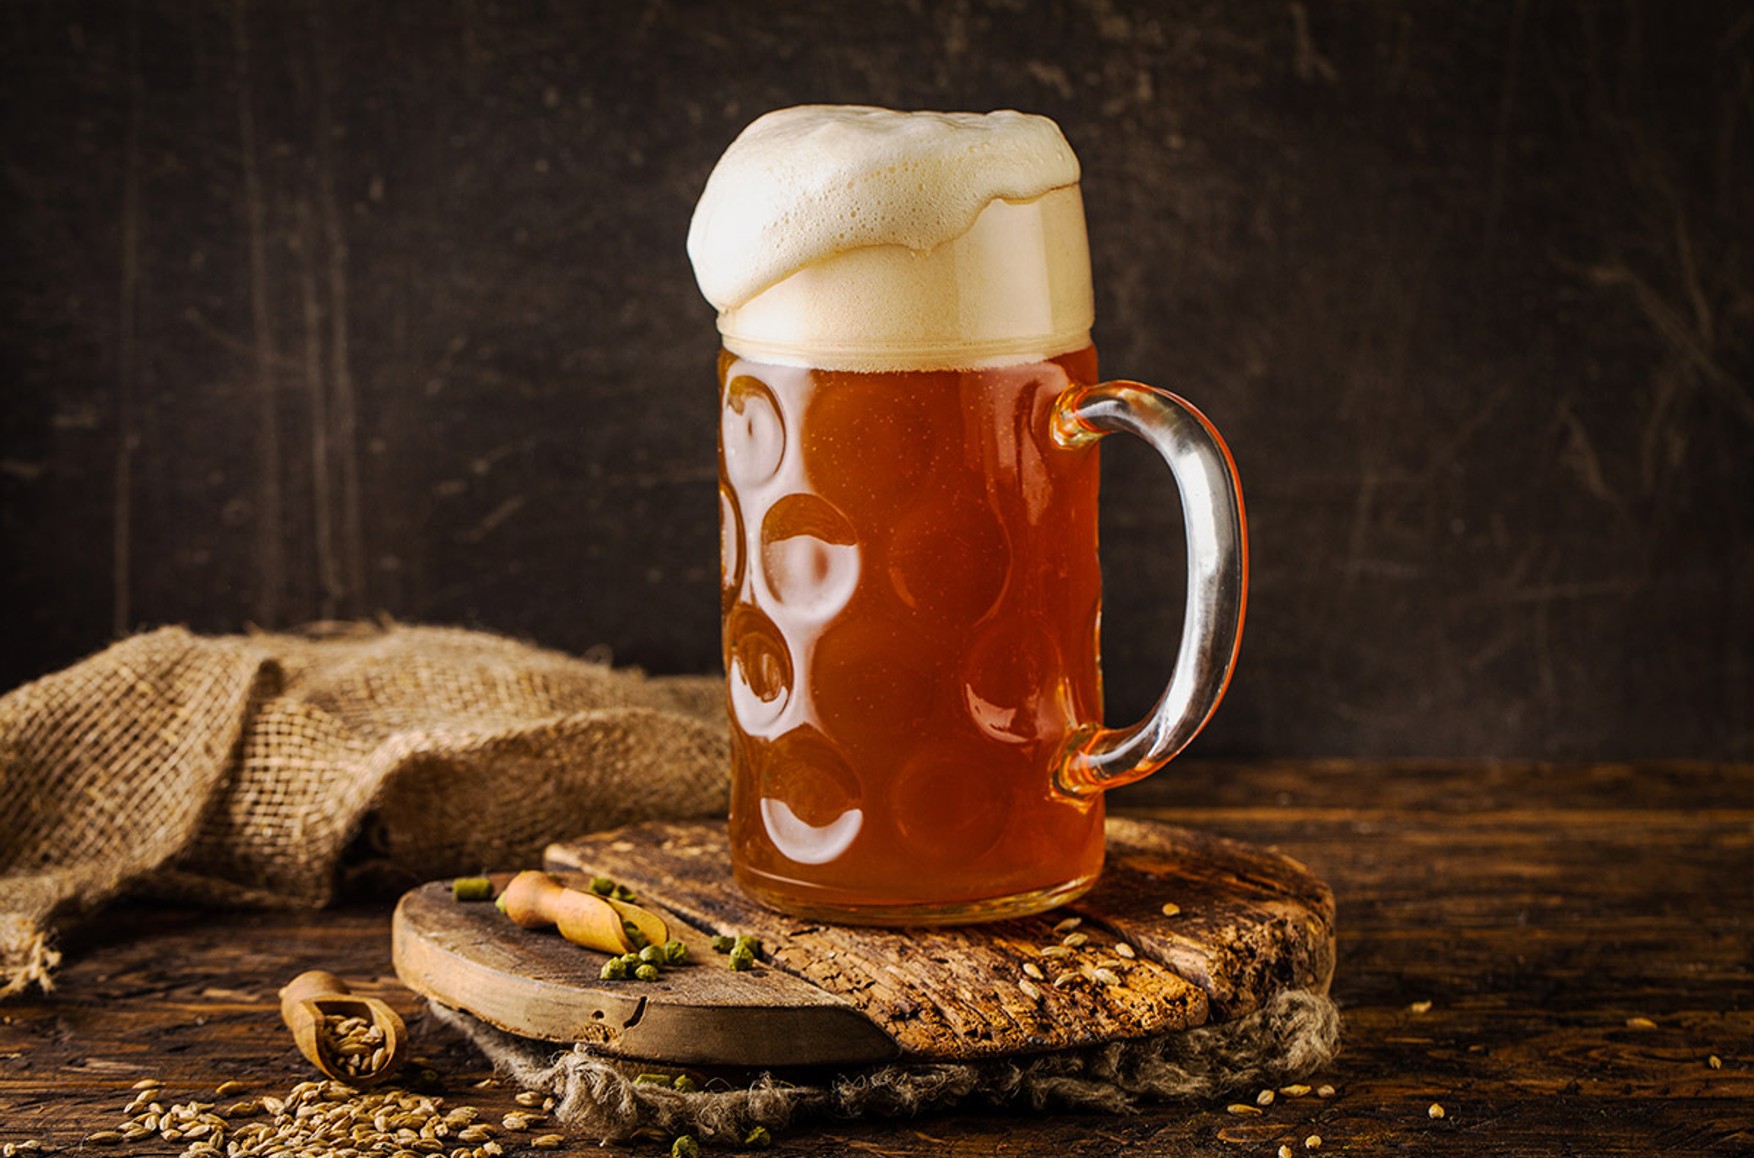 Пивовары предупредили о возможном росте цен на пиво и сокращении производства из-за санкций 